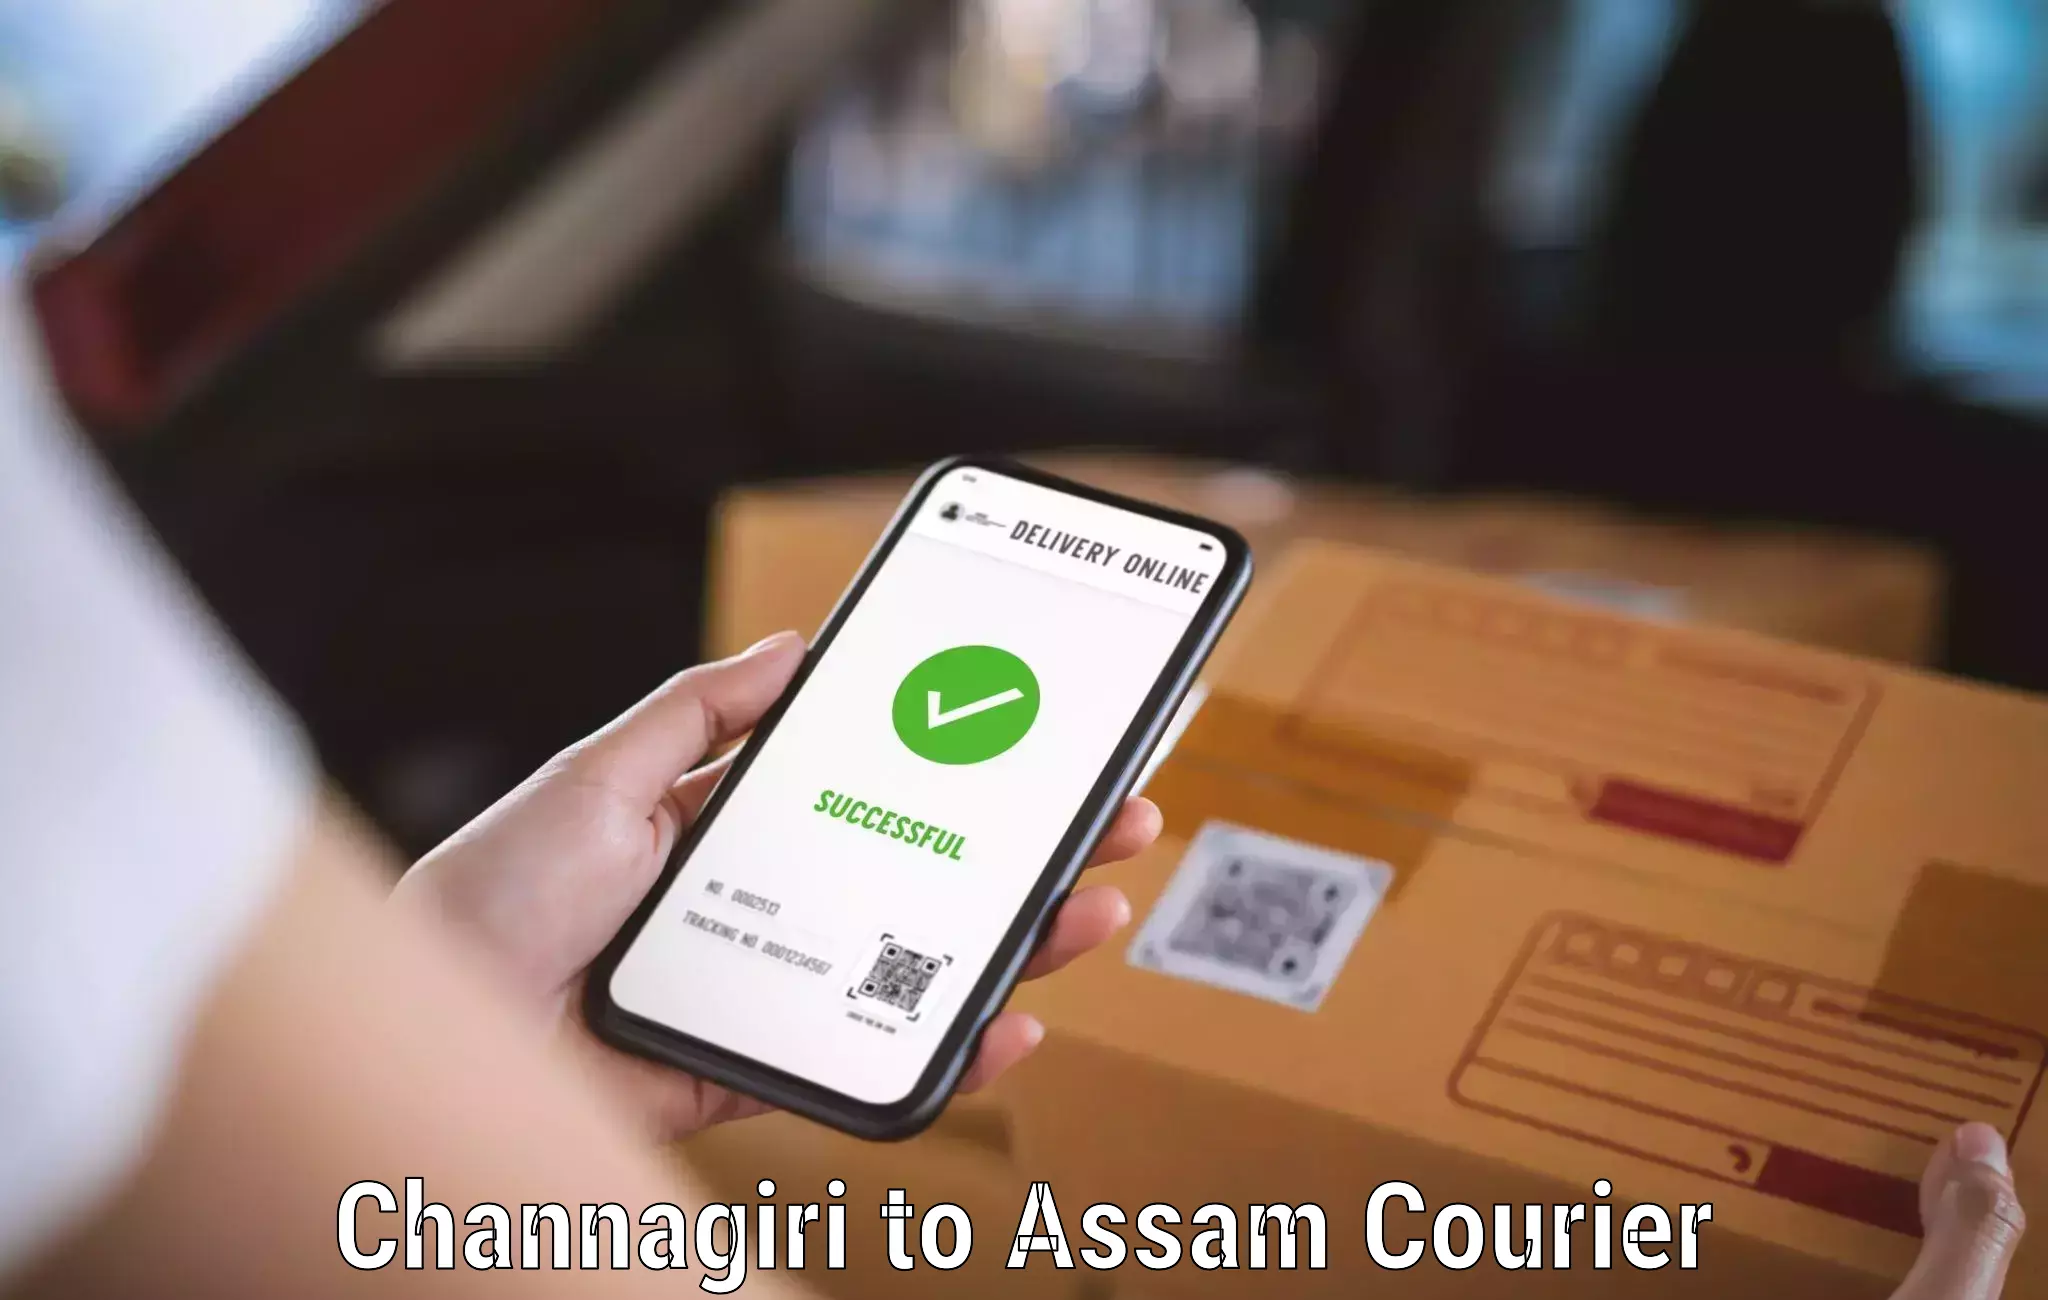 24/7 courier service Channagiri to Mazbat